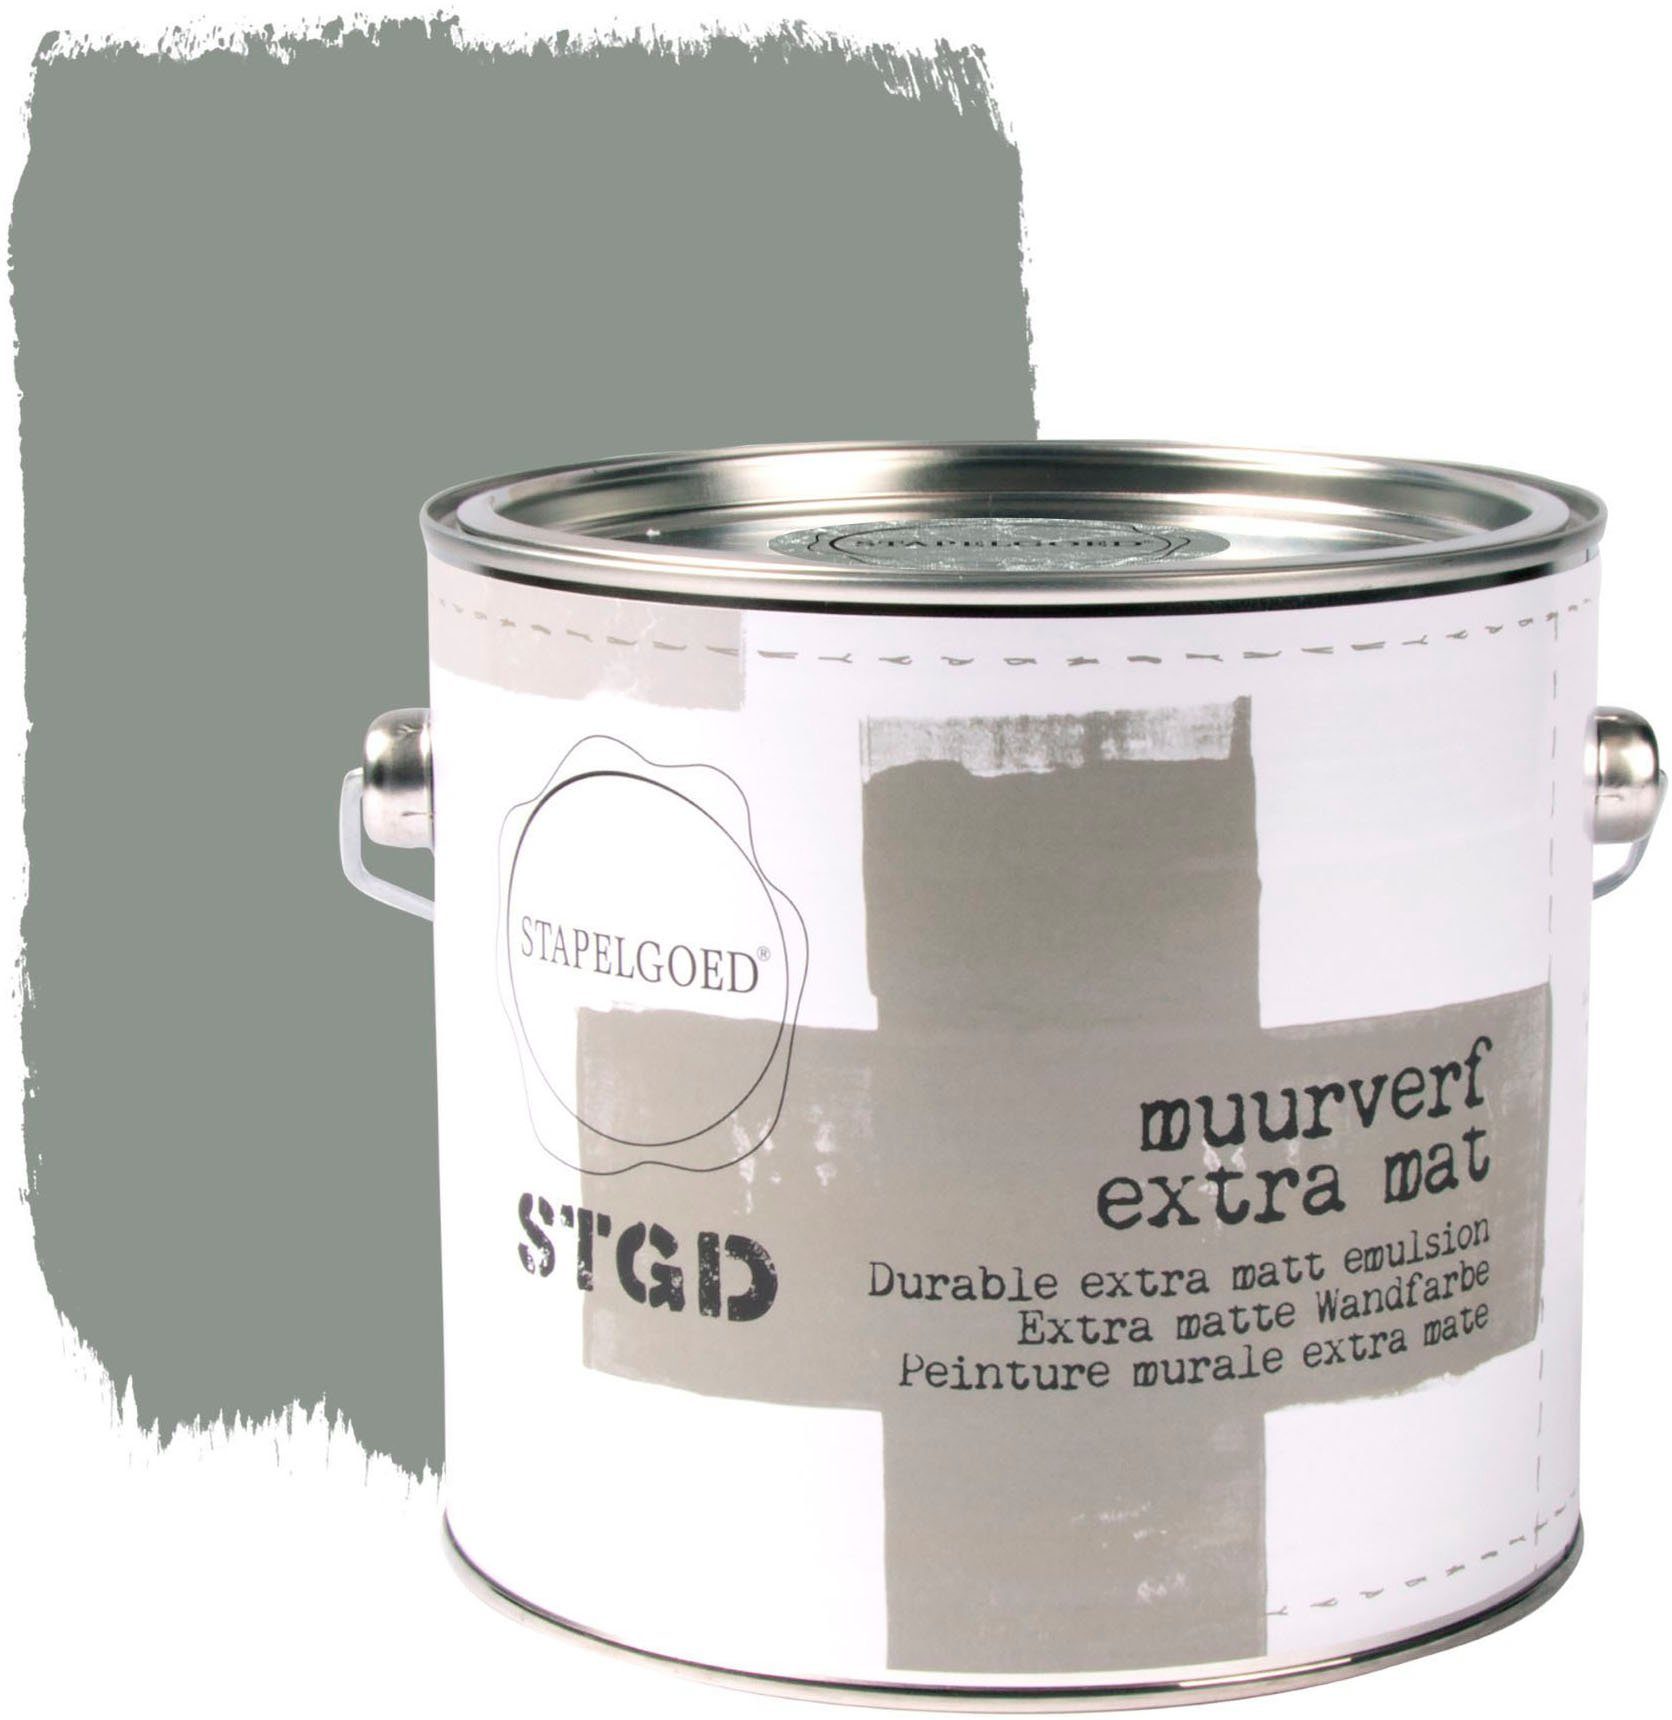 STAPELGOED Wandfarbe STGD muurverf grey shades, extra matt, hochdeckend und waschbeständig, 2,5 Liter Elephant Grau